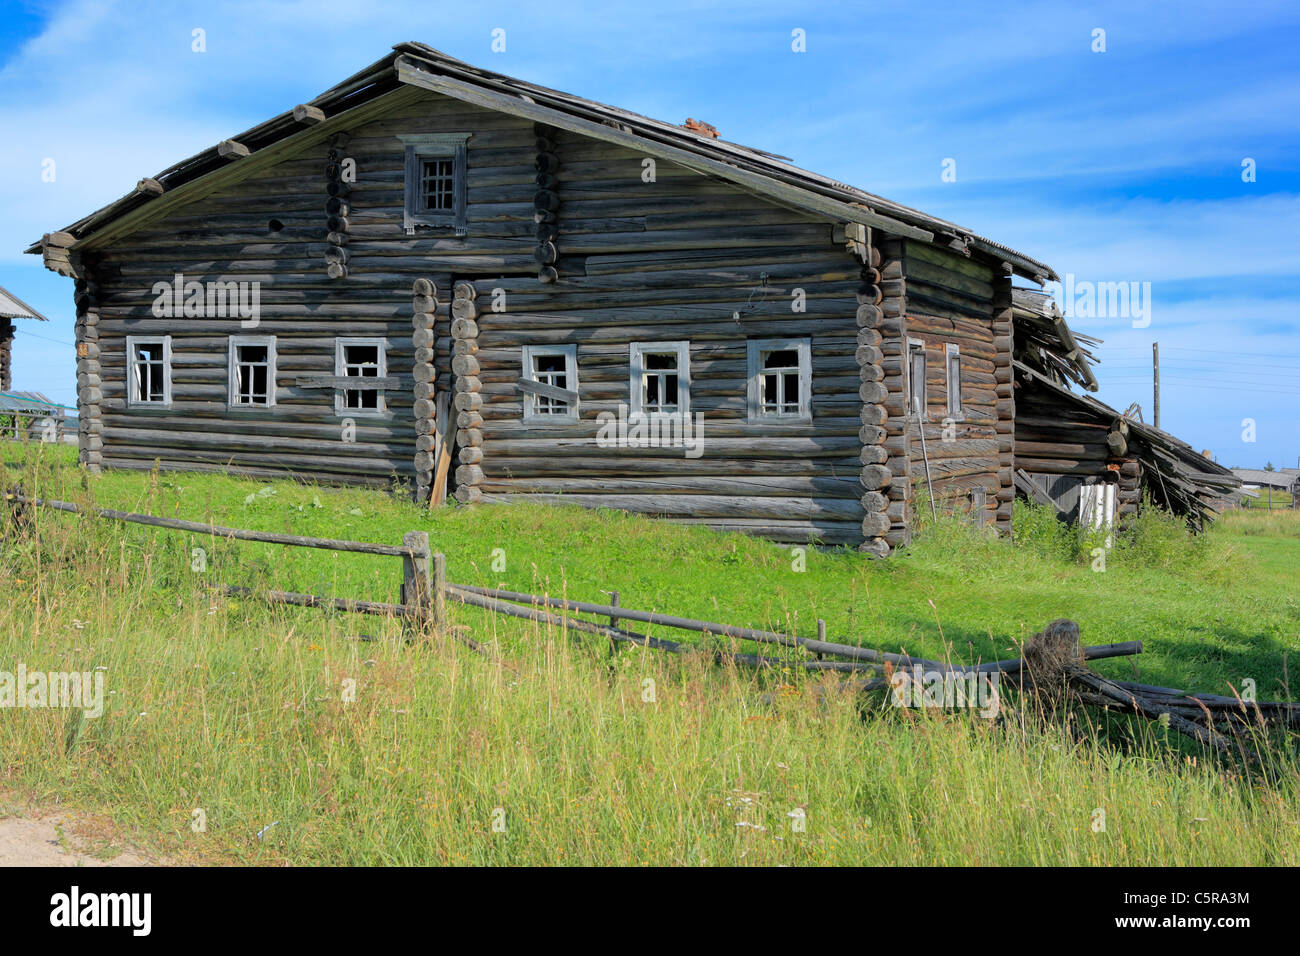 Wooden house, Seltso, Archangelsk (Arkhangelsk) region, Russia Stock Photo